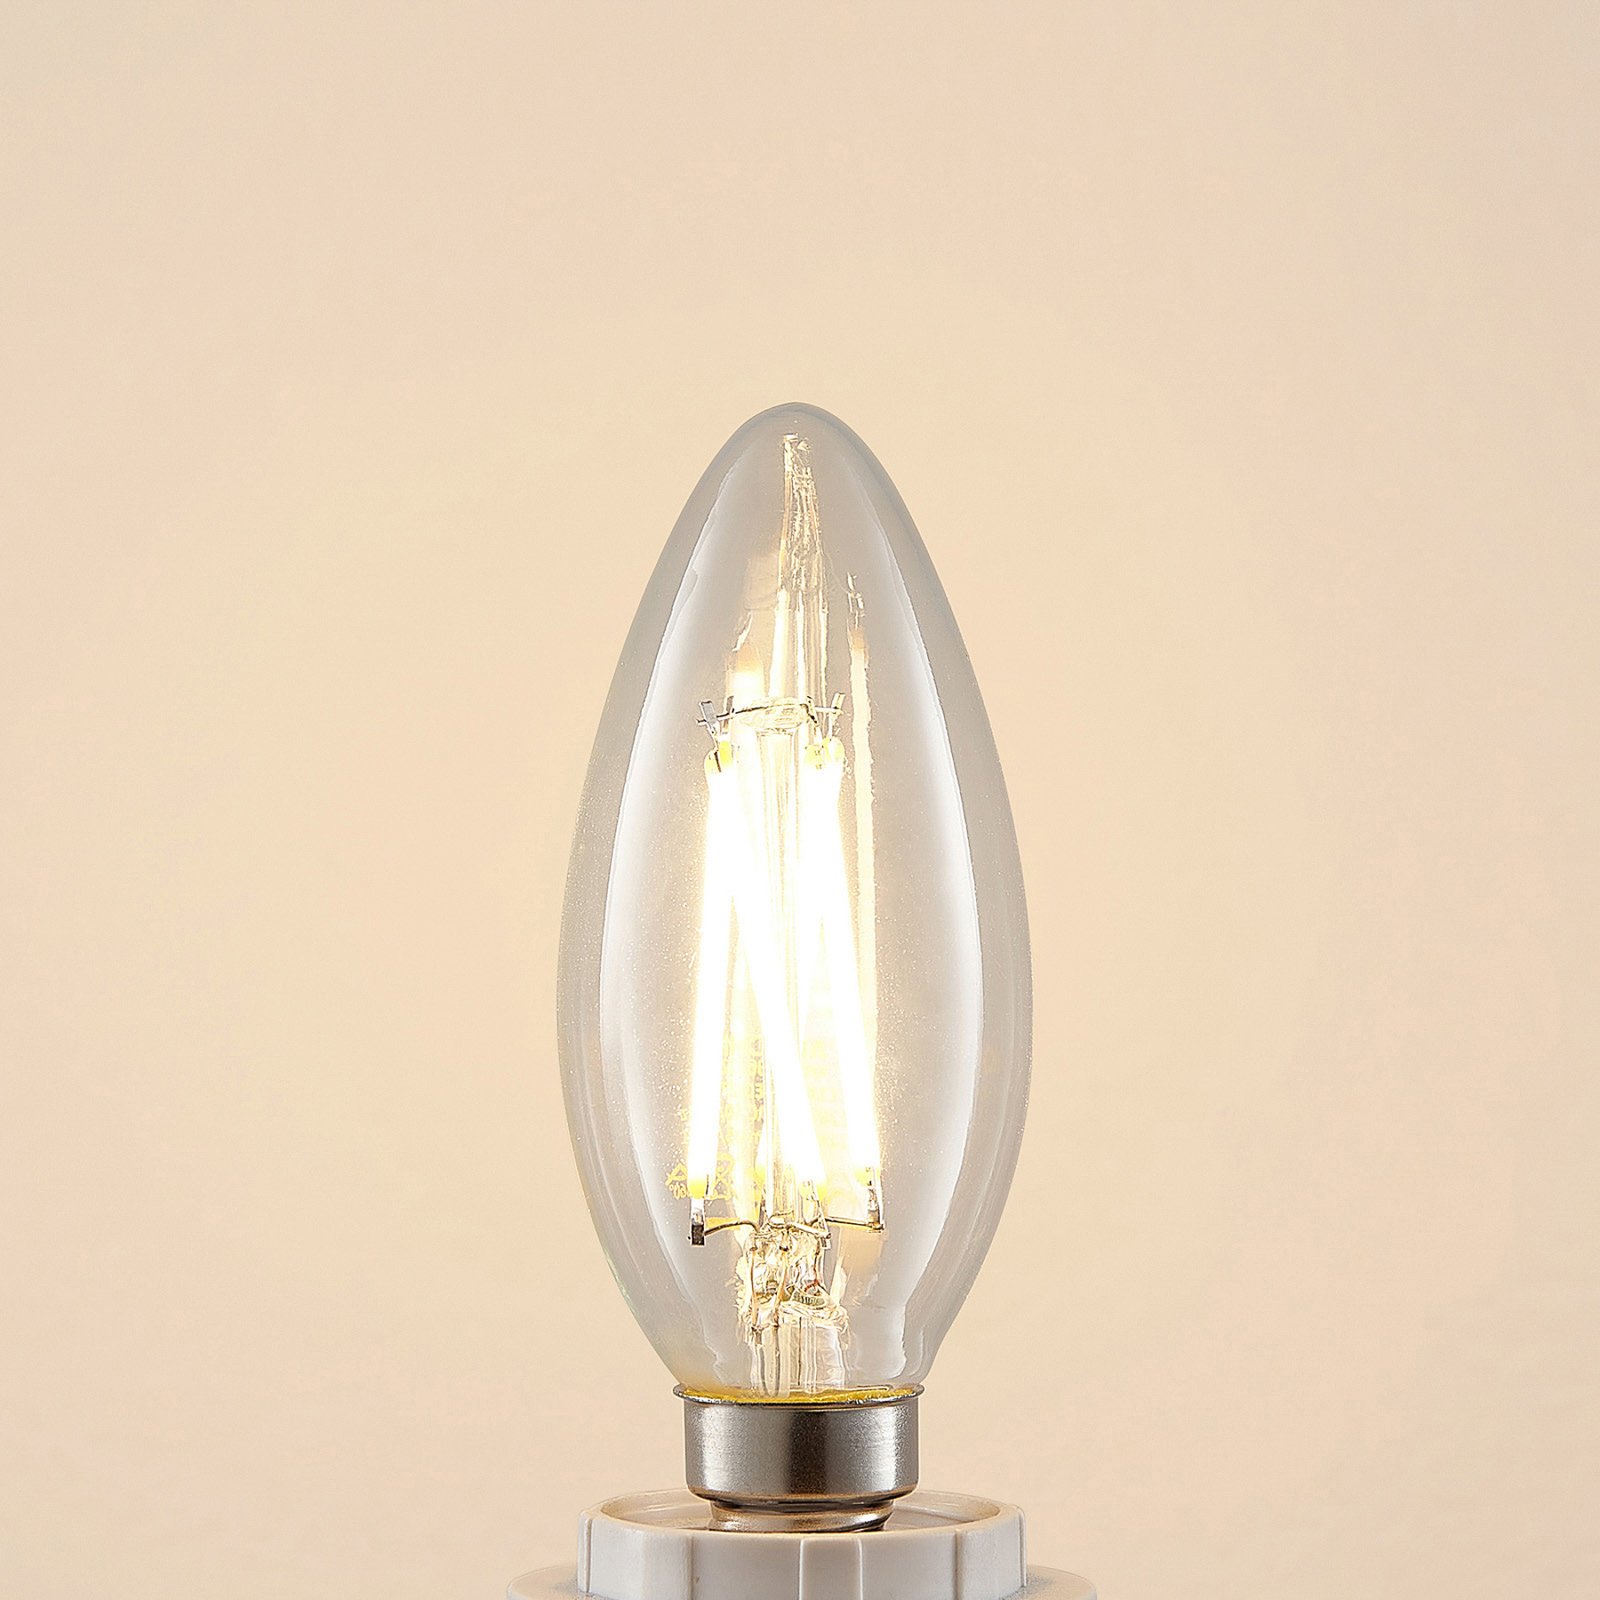 LED-filamentpære E14 4 W 827 kerte, dæmpes, 2 stk